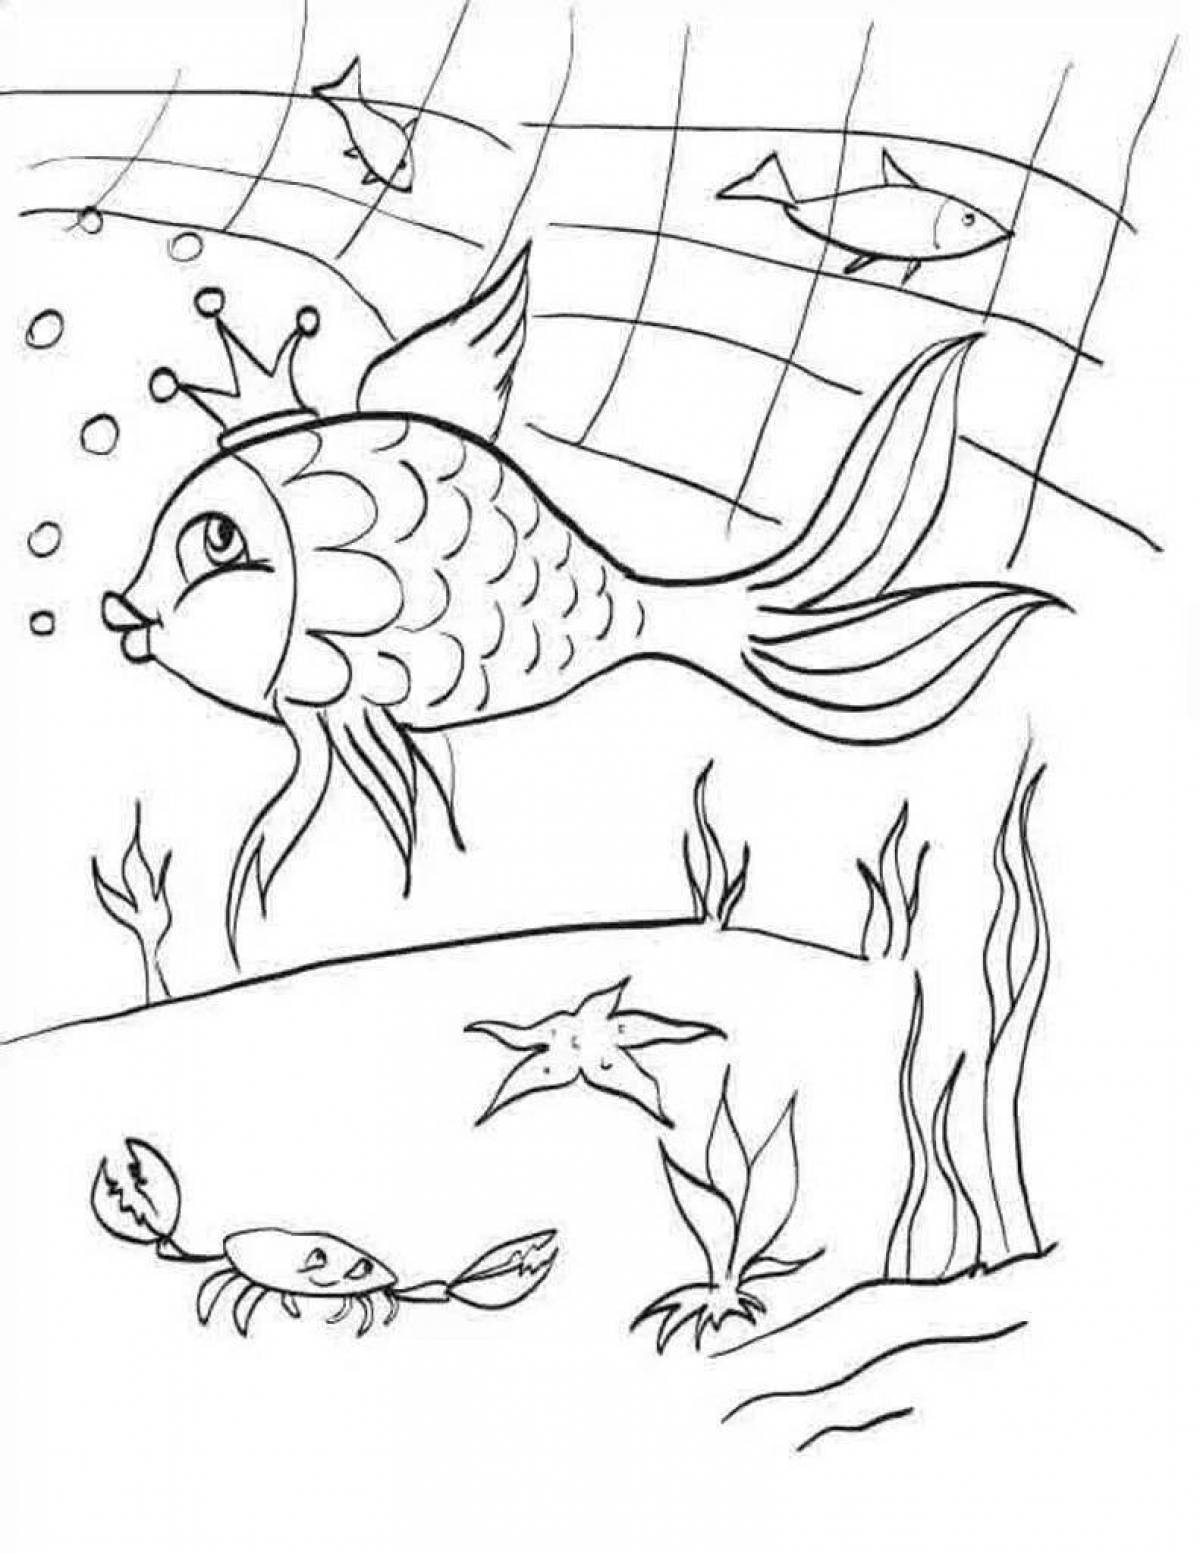 Красочная раскраска к сказке о рыбаке и рыбке